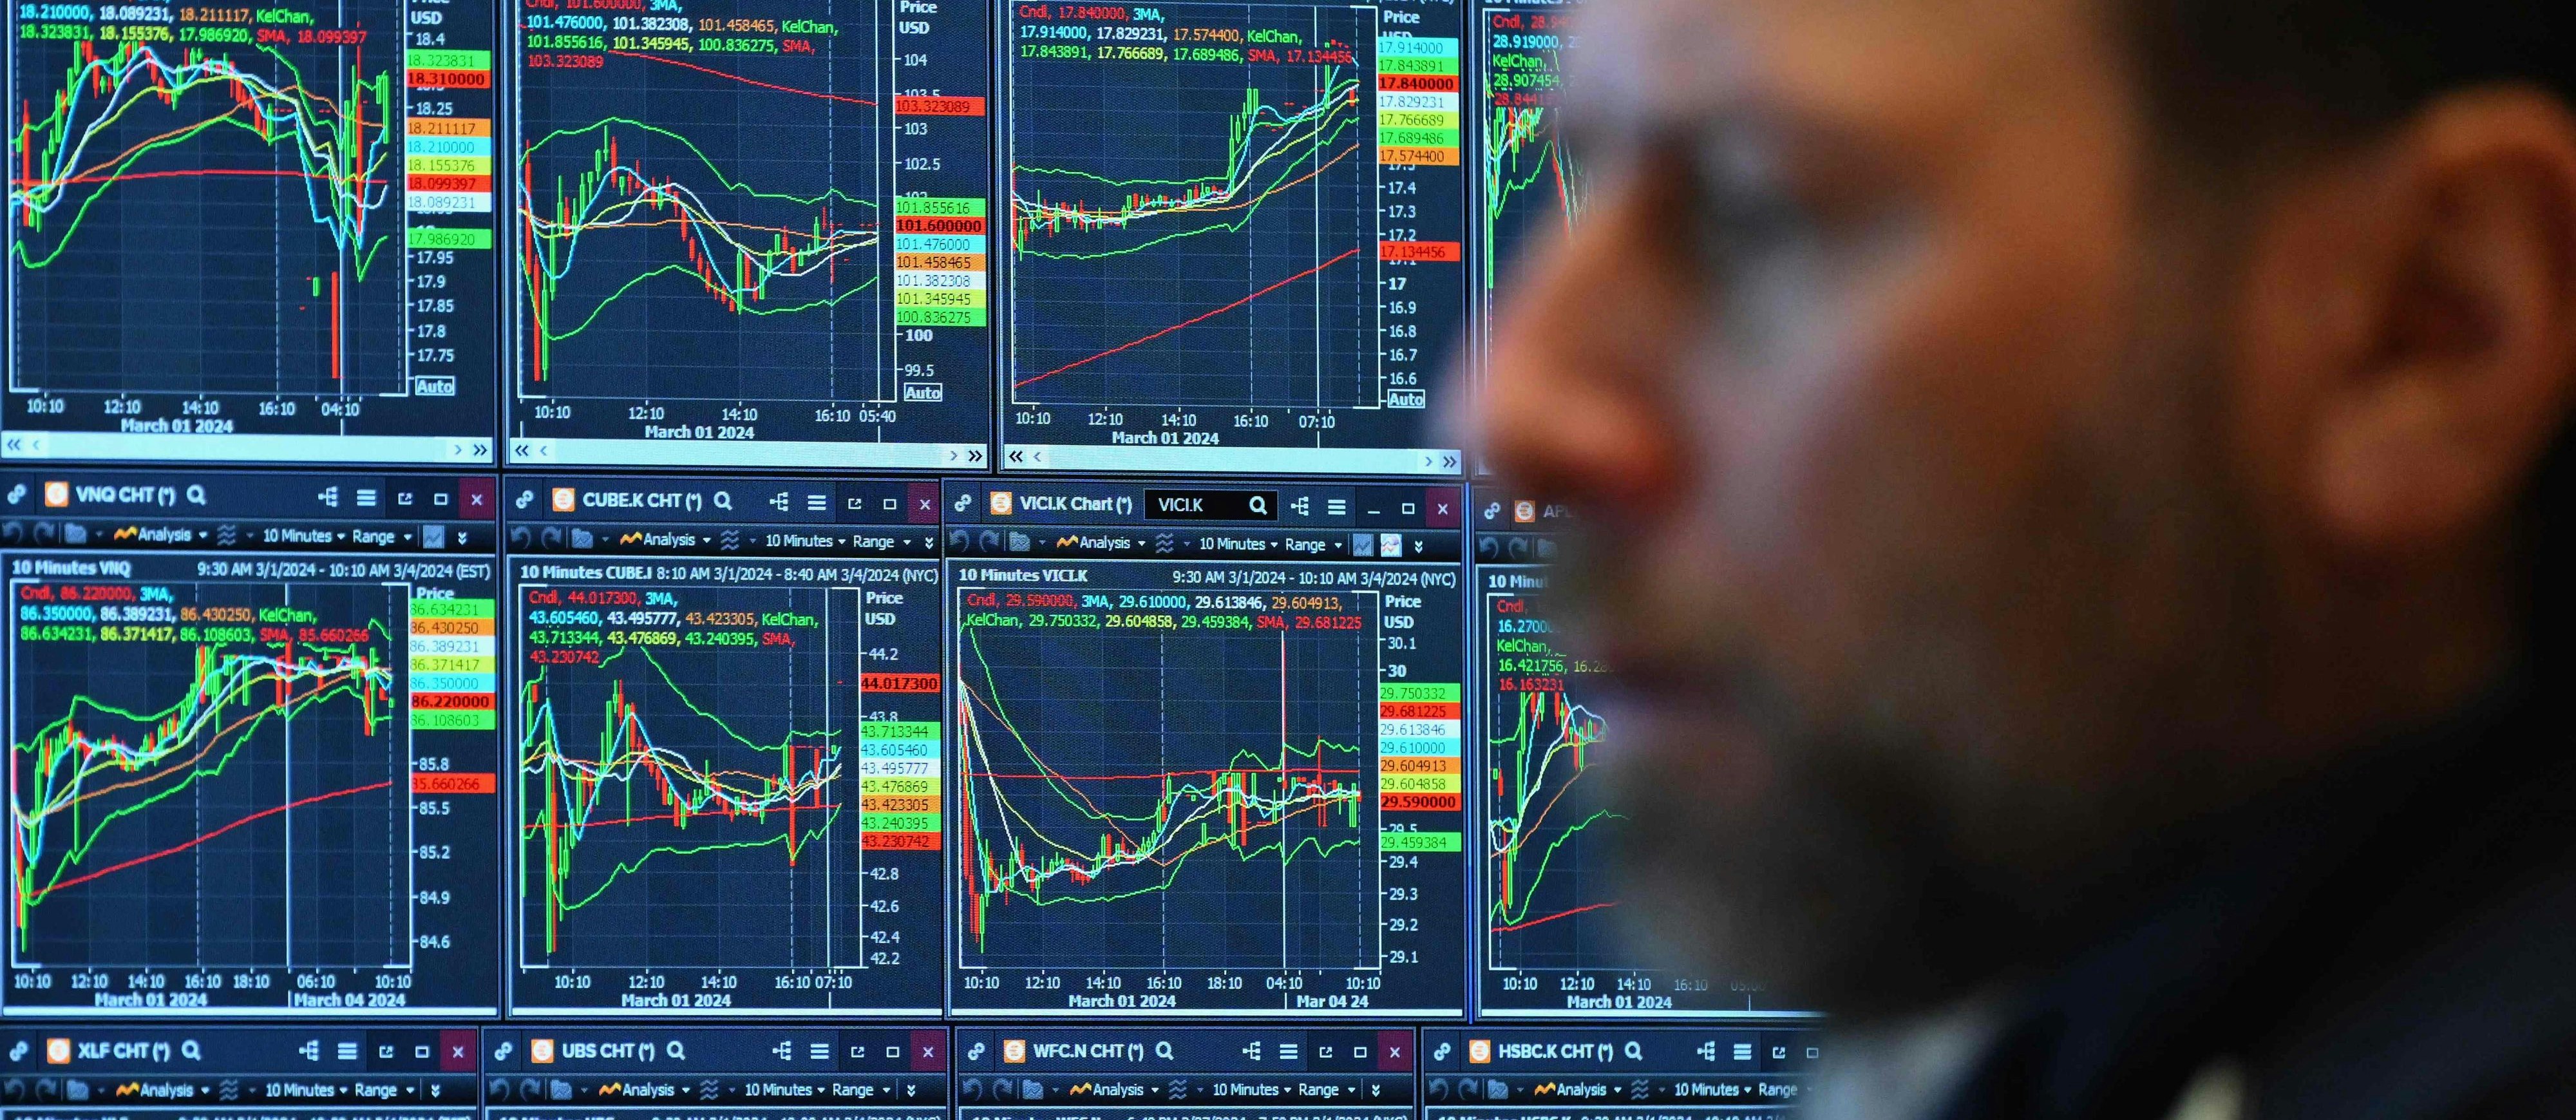 Blick auf das Parkett der "New York Stock Exchange" (NYSE): Die Börse befindet sich momentan im Höhenflug